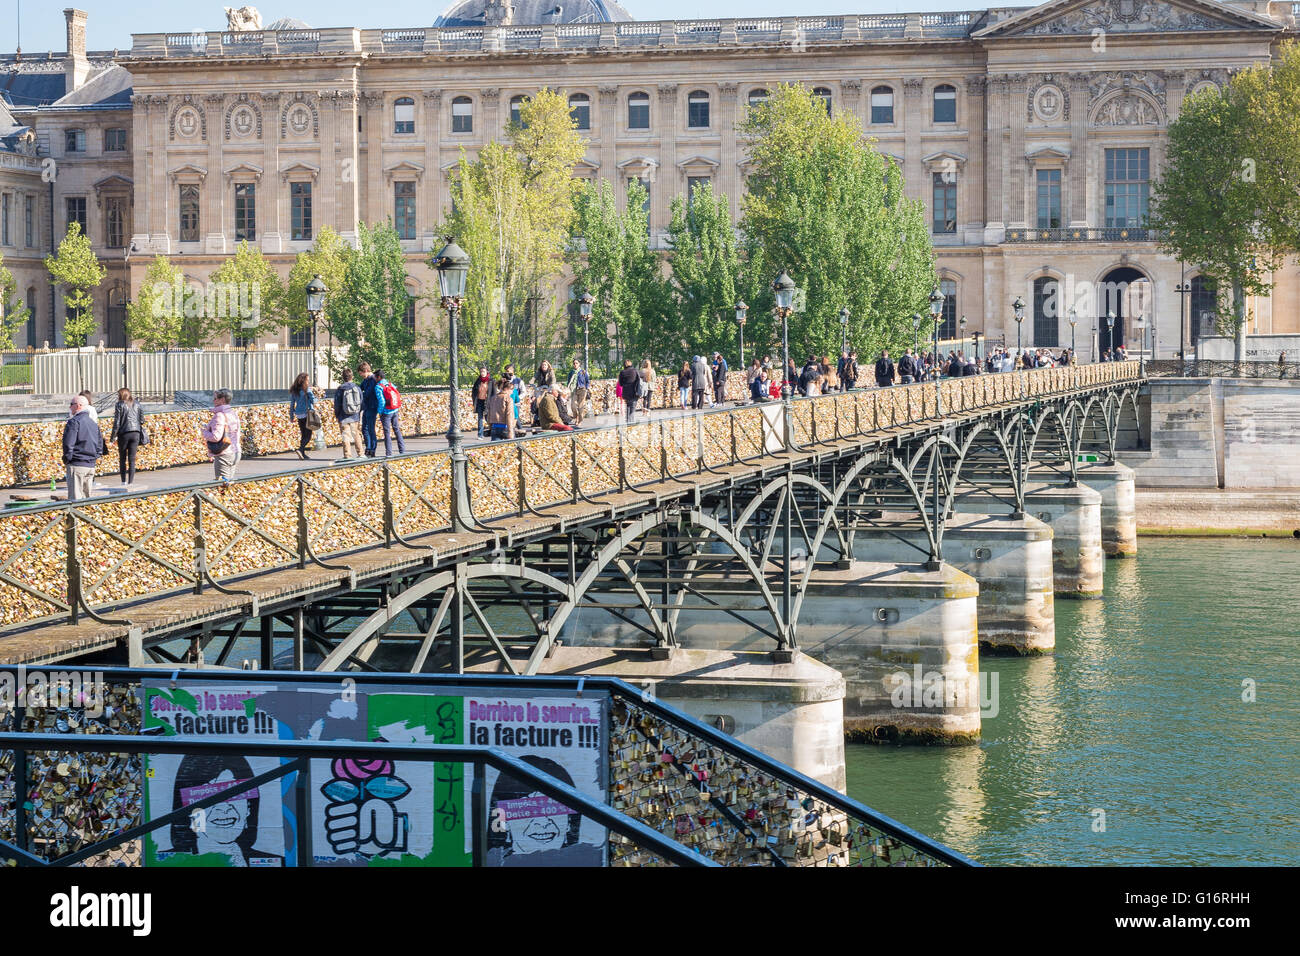 Les piétons traversent la Seine à Paris sur le Pont des Arts, c'est forgé recouvert de cadenas. Musée du Louvre en arrière-plan. Banque D'Images